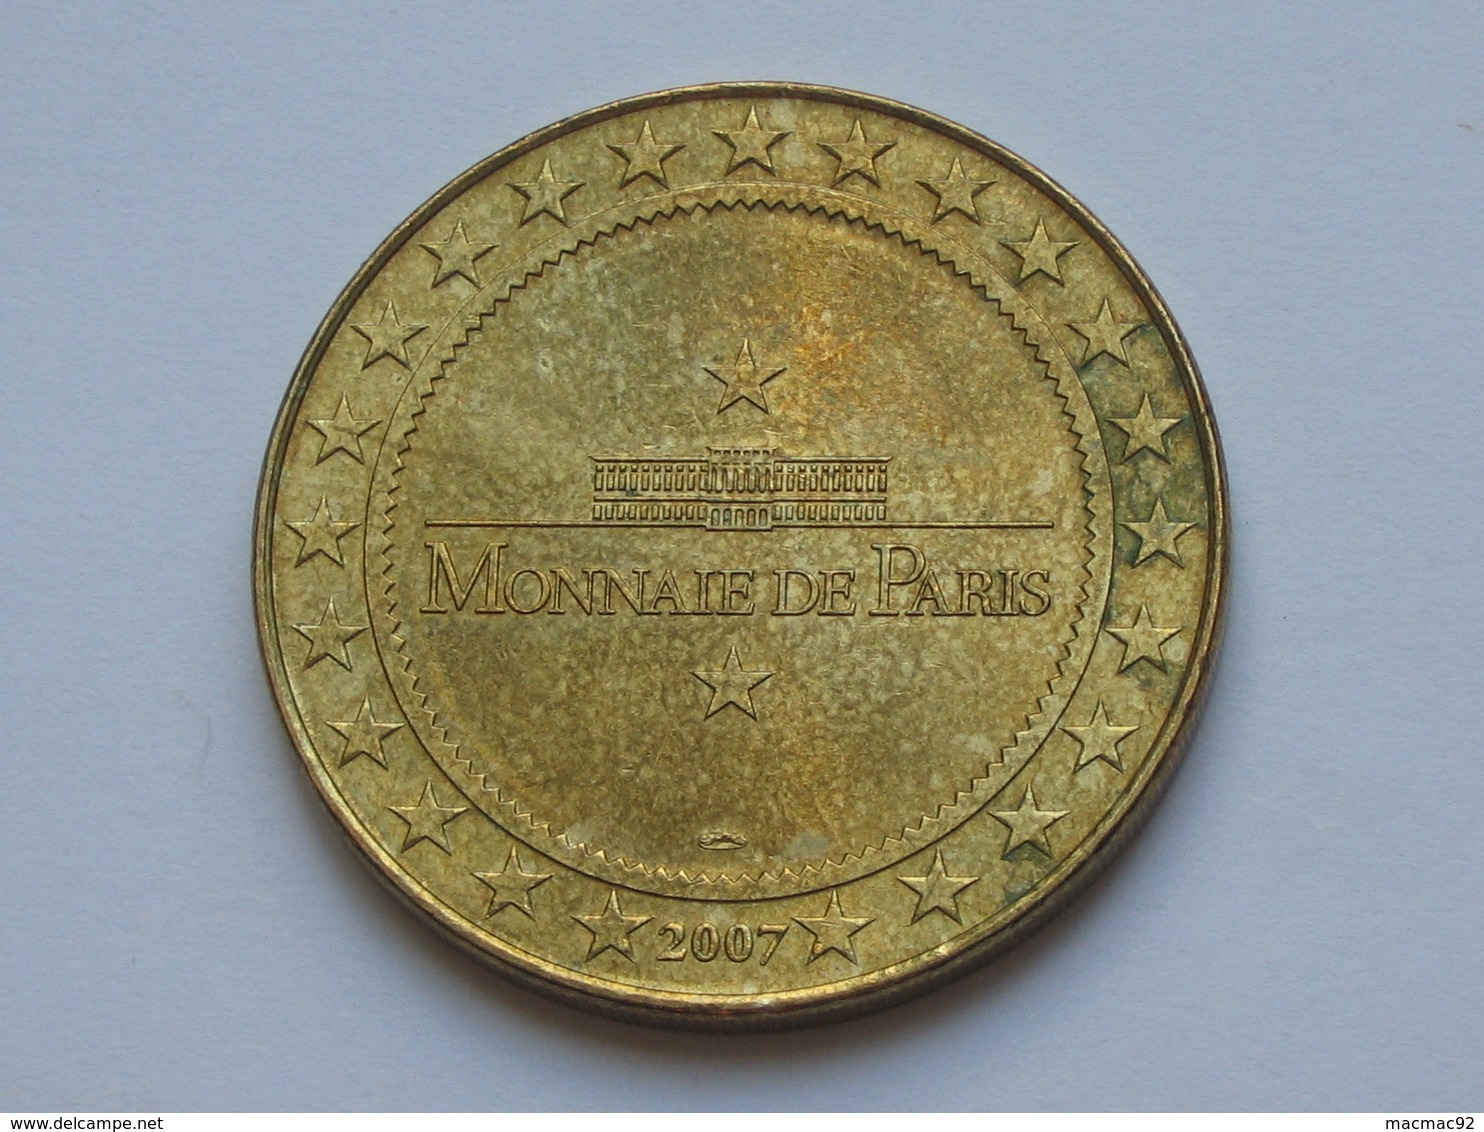 Monnaie De Paris - DISNEYLAND N° 12 **** EN ACHAT IMMEDIAT **** - 2007